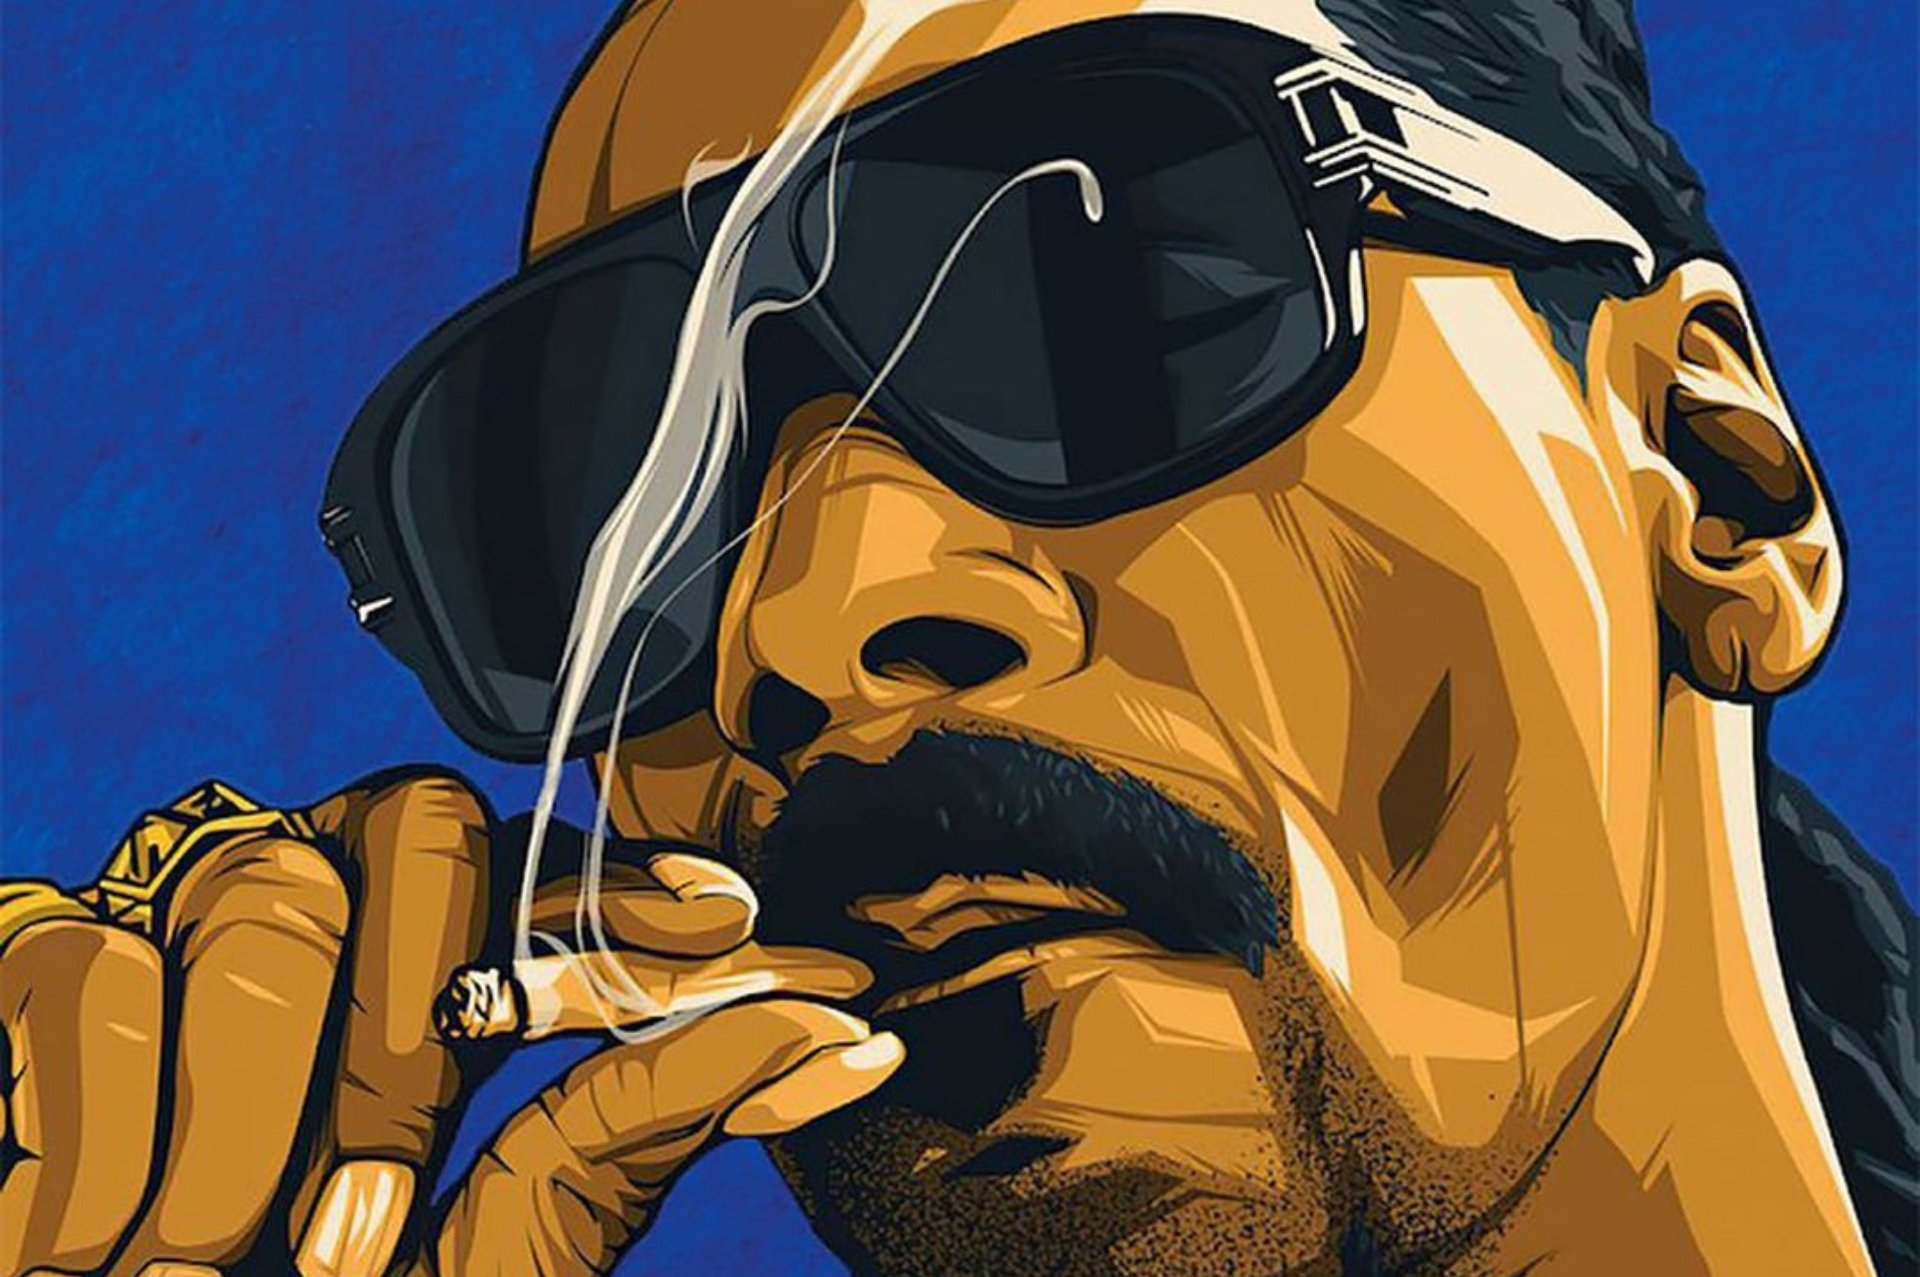 El día que Snoop Dogg fumó marihuana en la Casa Blanca